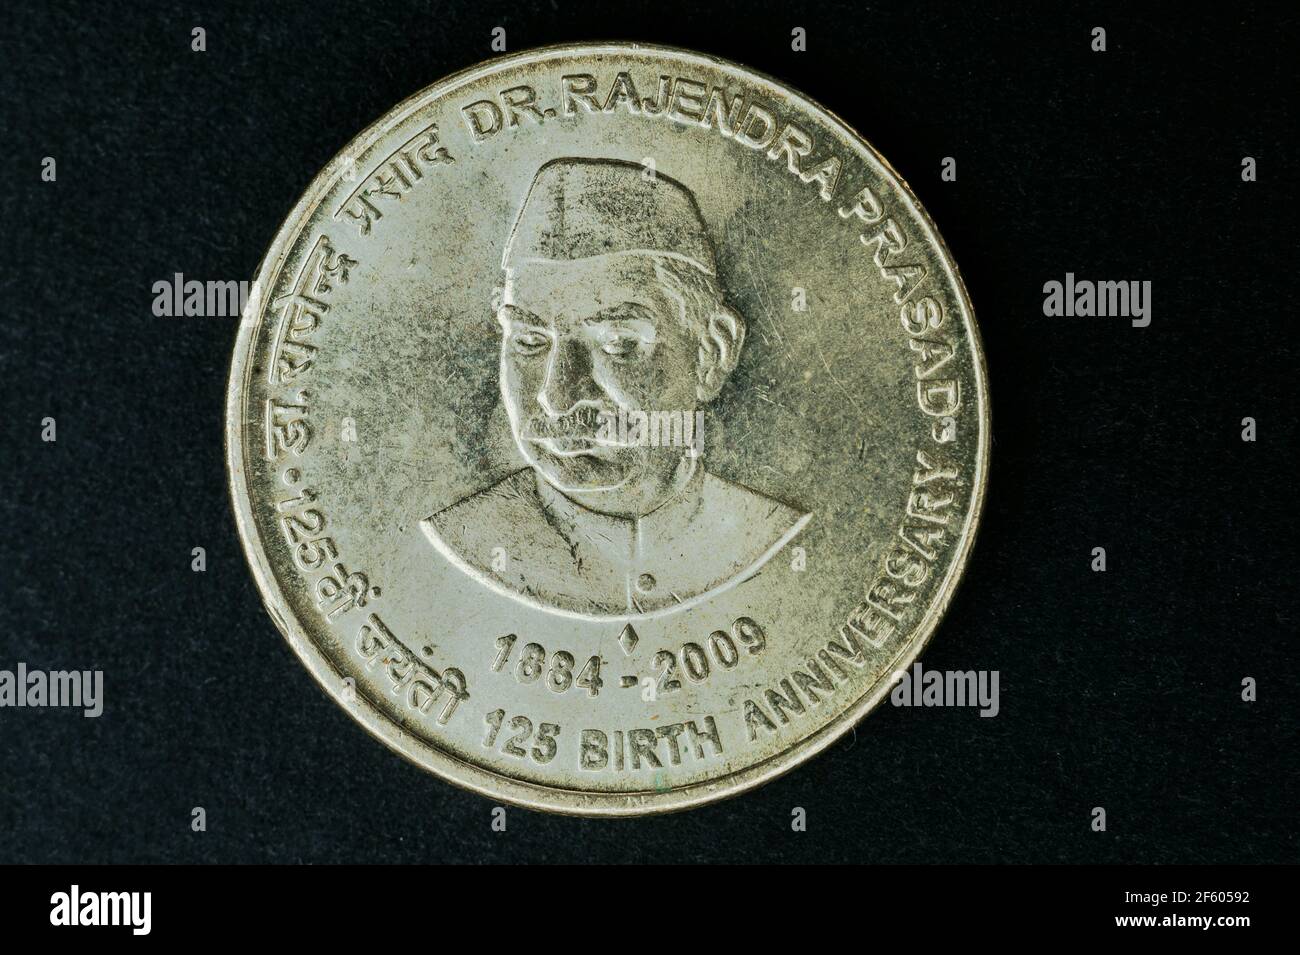 04 Oct 2015 Dr Rajendra Prasad 125 Birth Century 5 Rupee Coin Kalyan near Mumbai Maharashtra INDIA Stock Photo